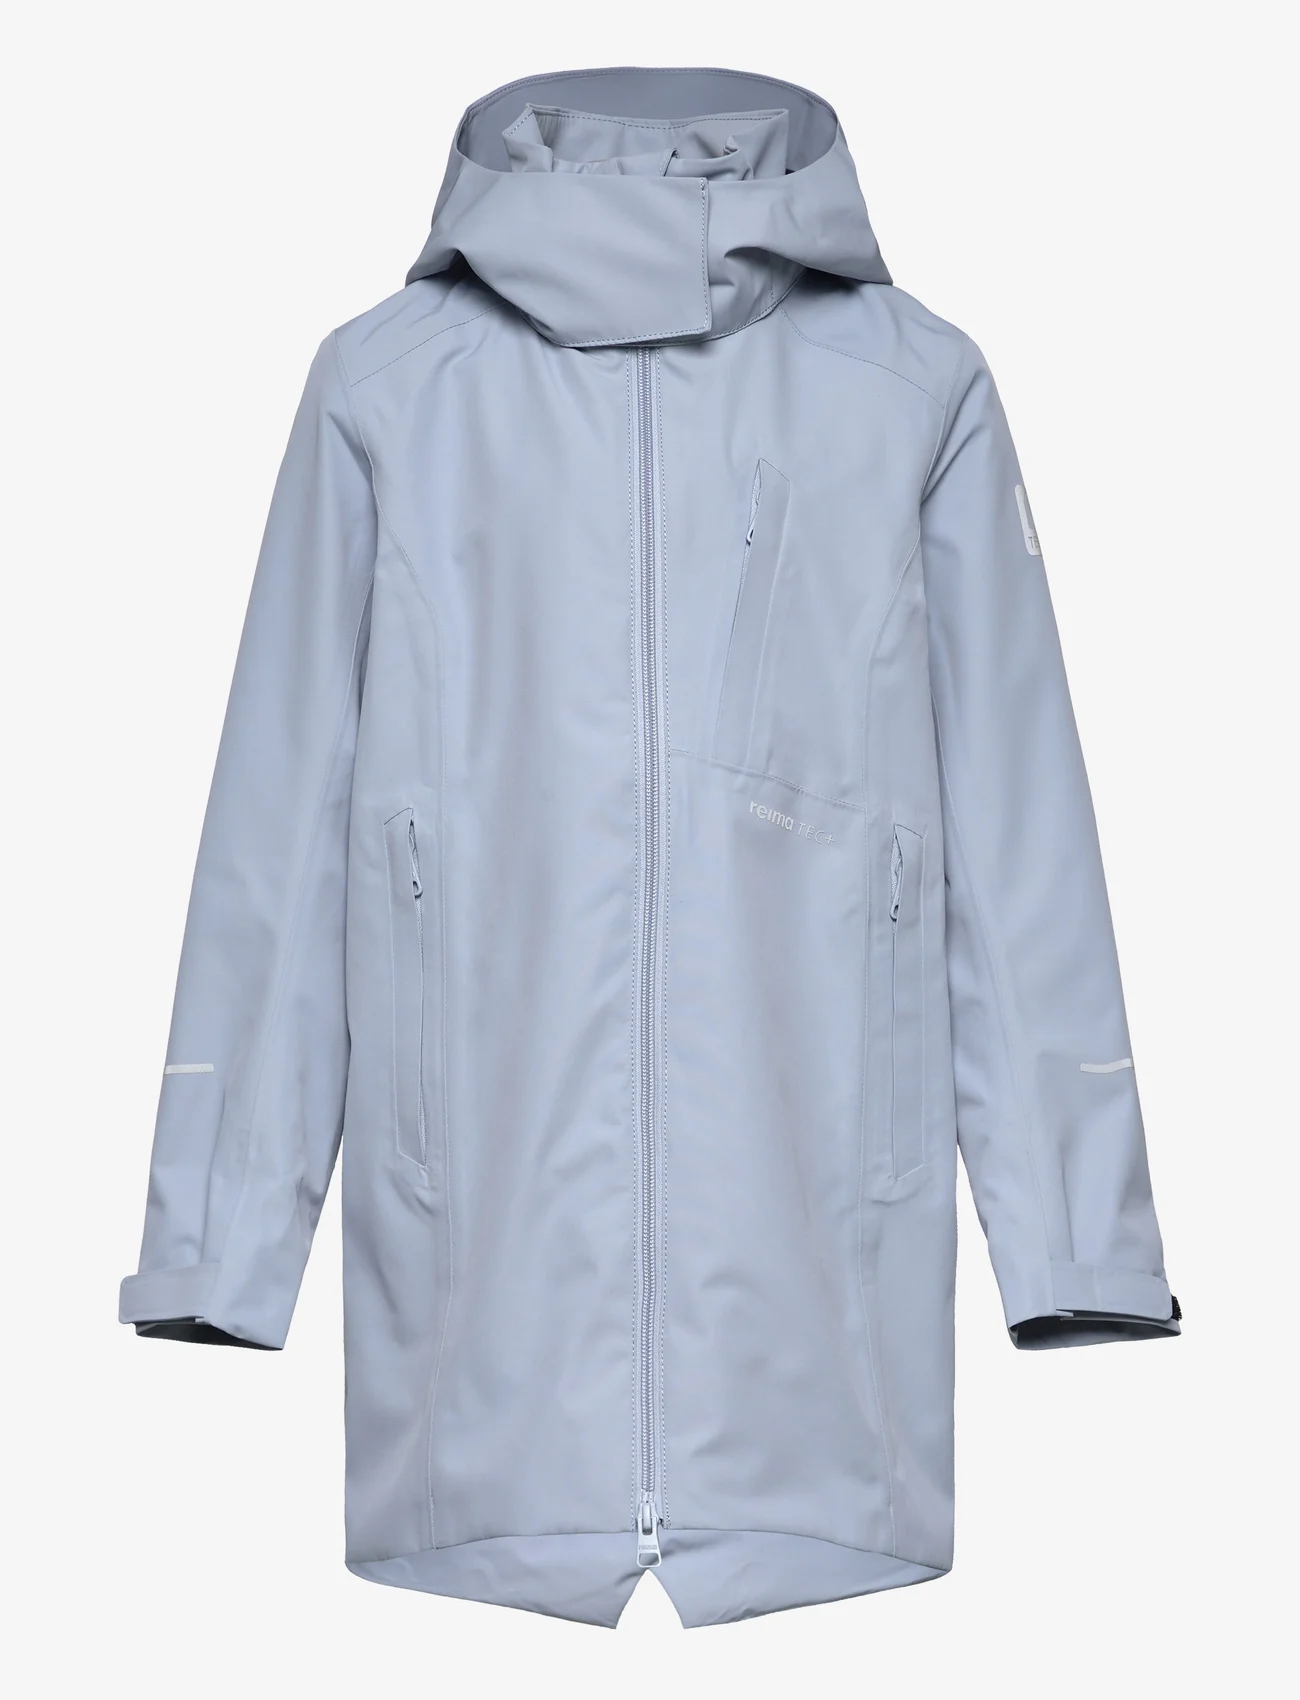 Reima - Reimatec jacket, Muutun - sadetakit - foggy blue - 0